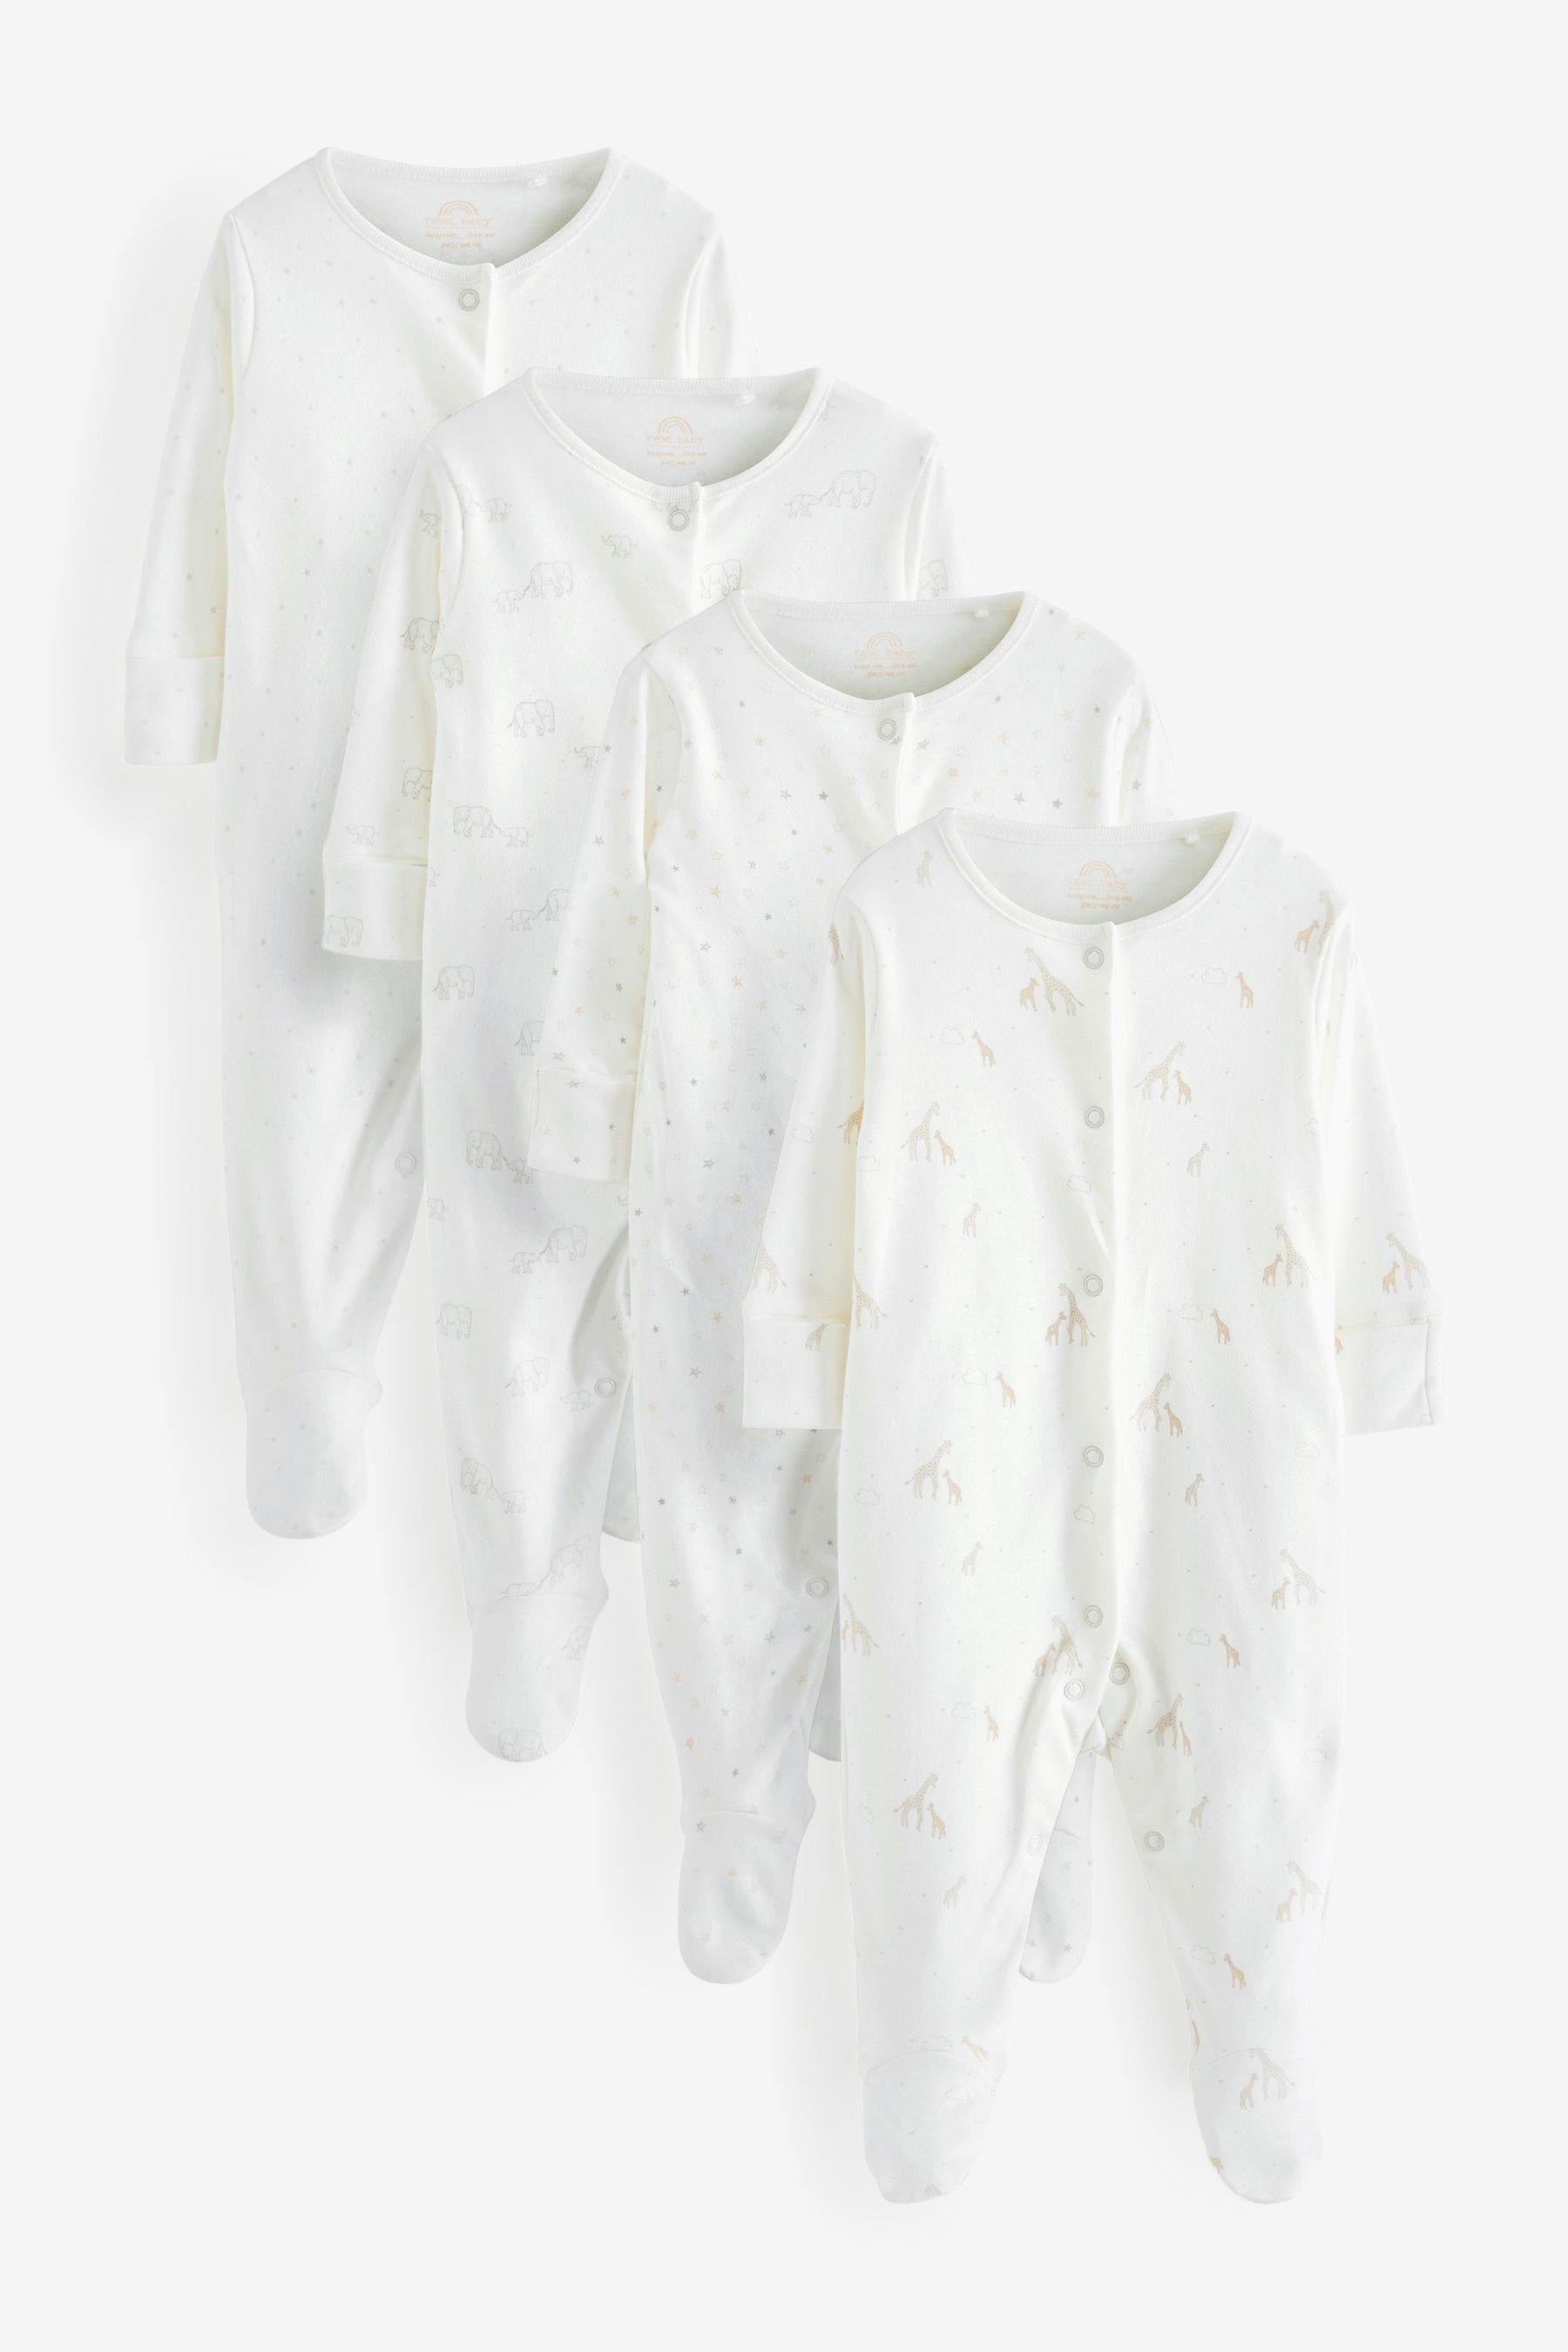 Next Schlafoverall Bedruckte Baby-Schlafanzüge im 4er-Pack (4-tlg) Delicate White Animal